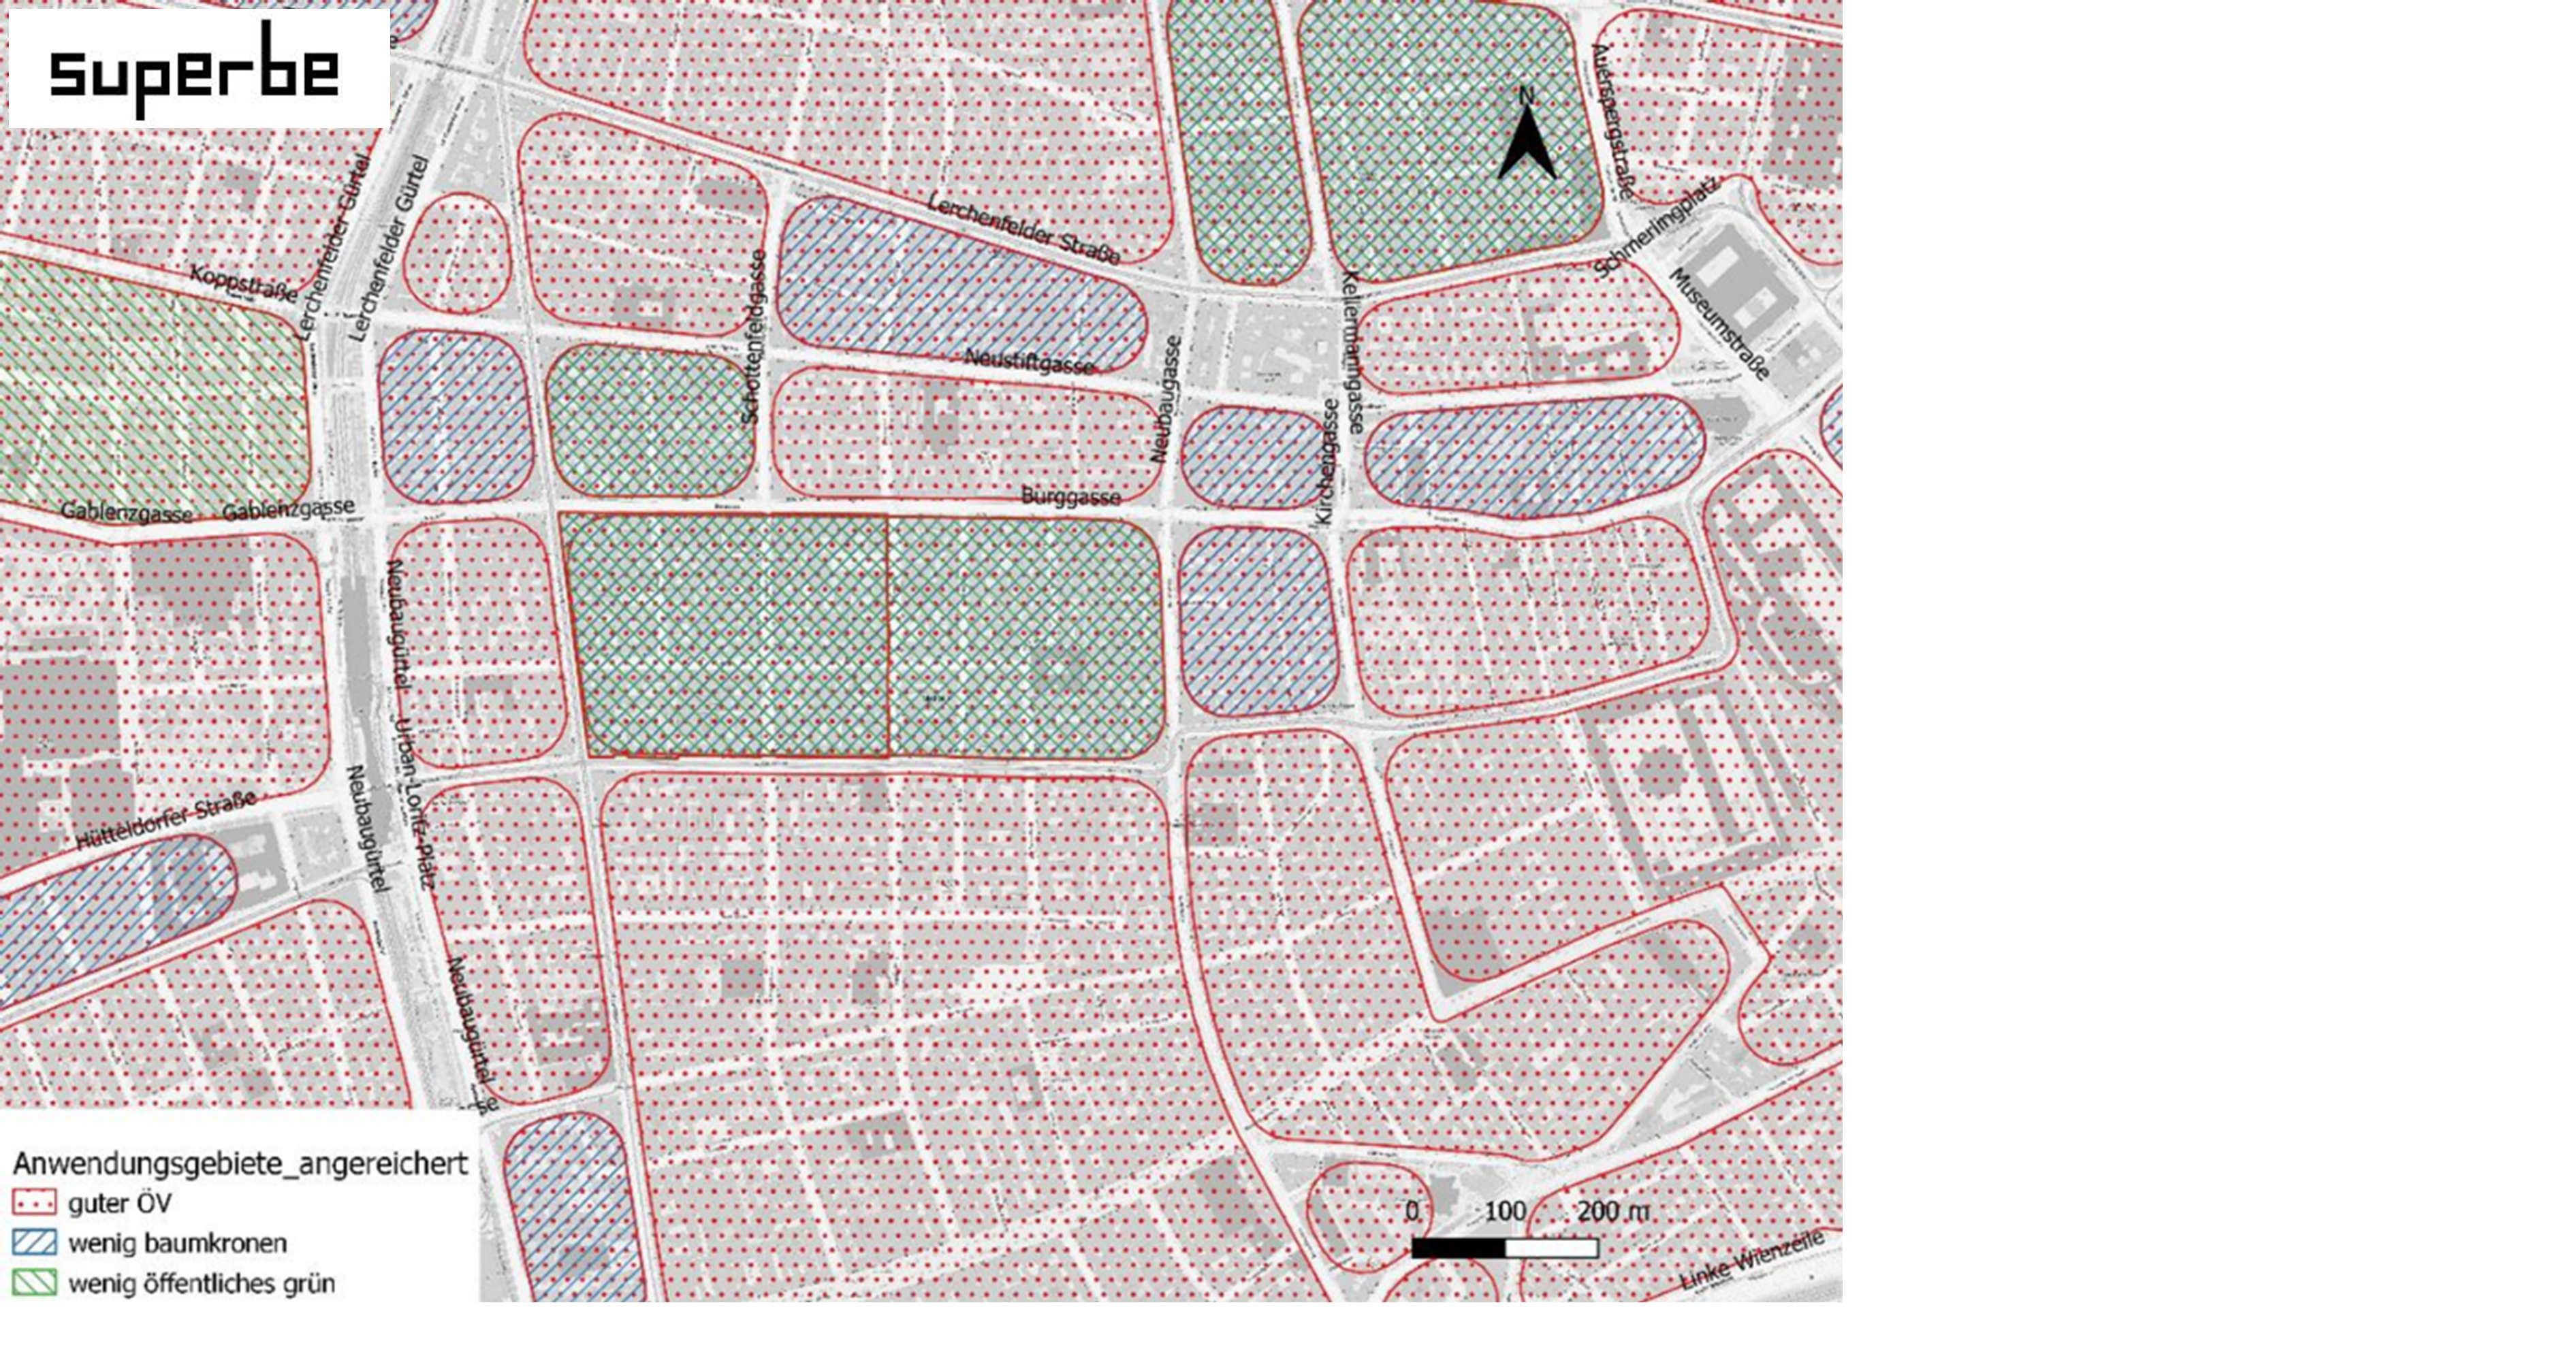 SUPERBE-Anwendungsgebiete: Karte mit eingezeichneten Blocks in Wien